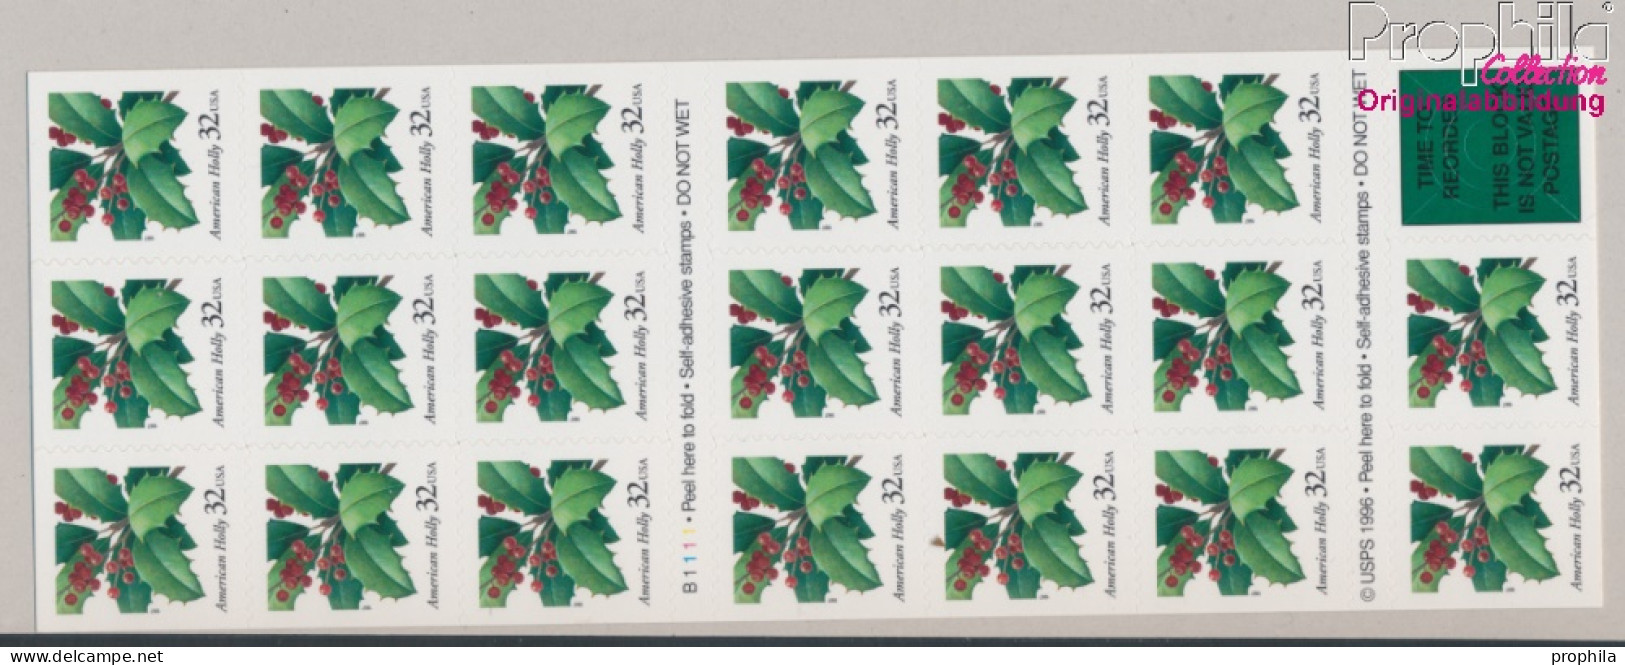 USA 2902Fb Folienblatt44 (kompl.Ausg.) Postfrisch 1997 Weihnachten (10368237 - Unused Stamps